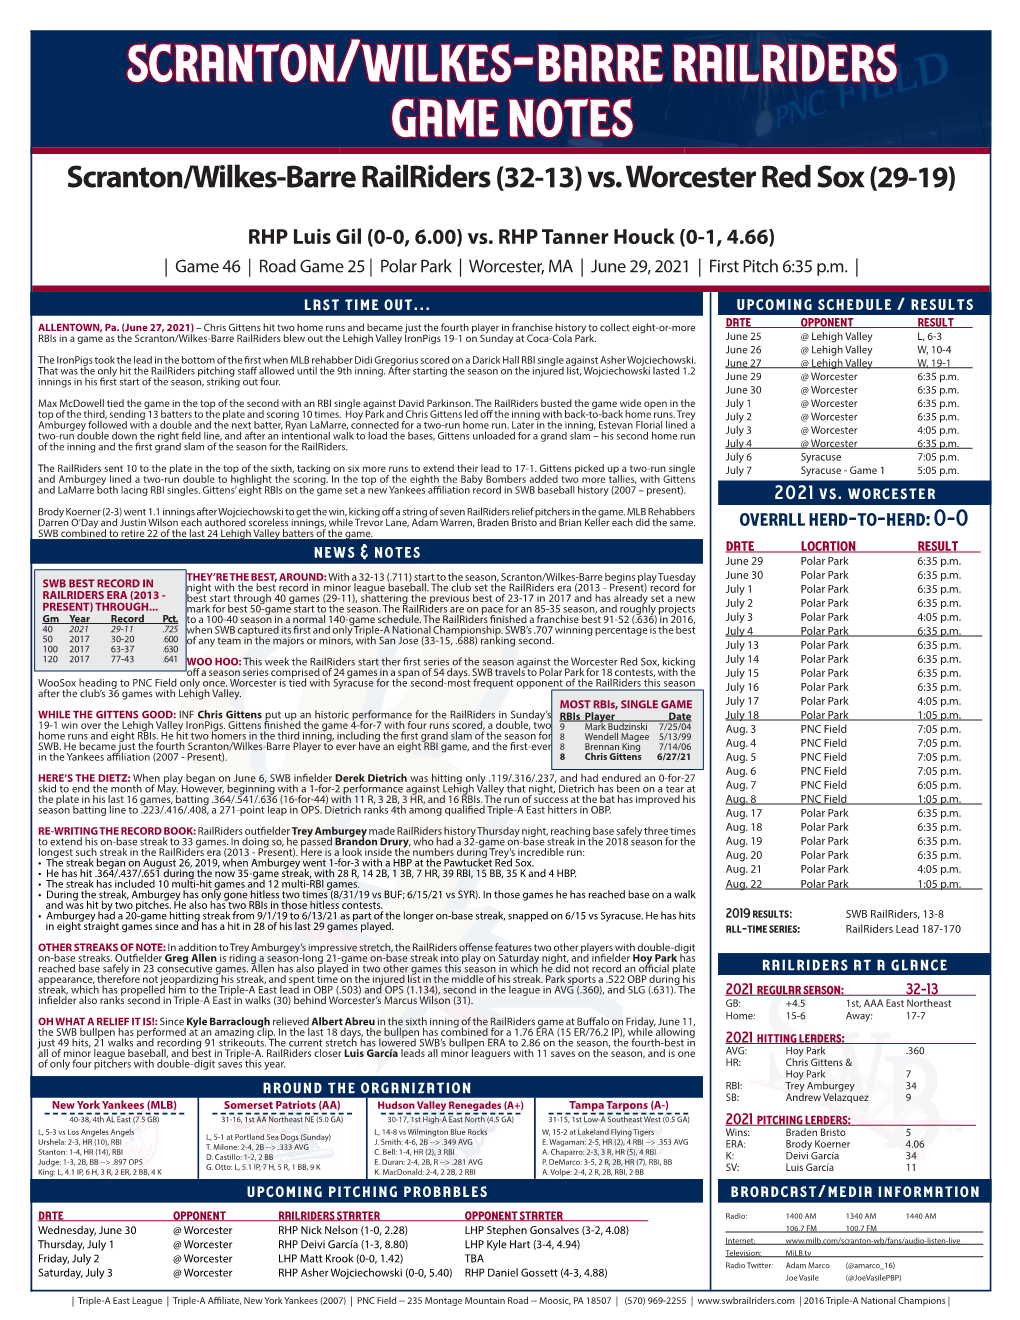 Scranton/Wilkes-Barre Railriders Game Notes Scranton/Wilkes-Barre Railriders (32-13) Vs